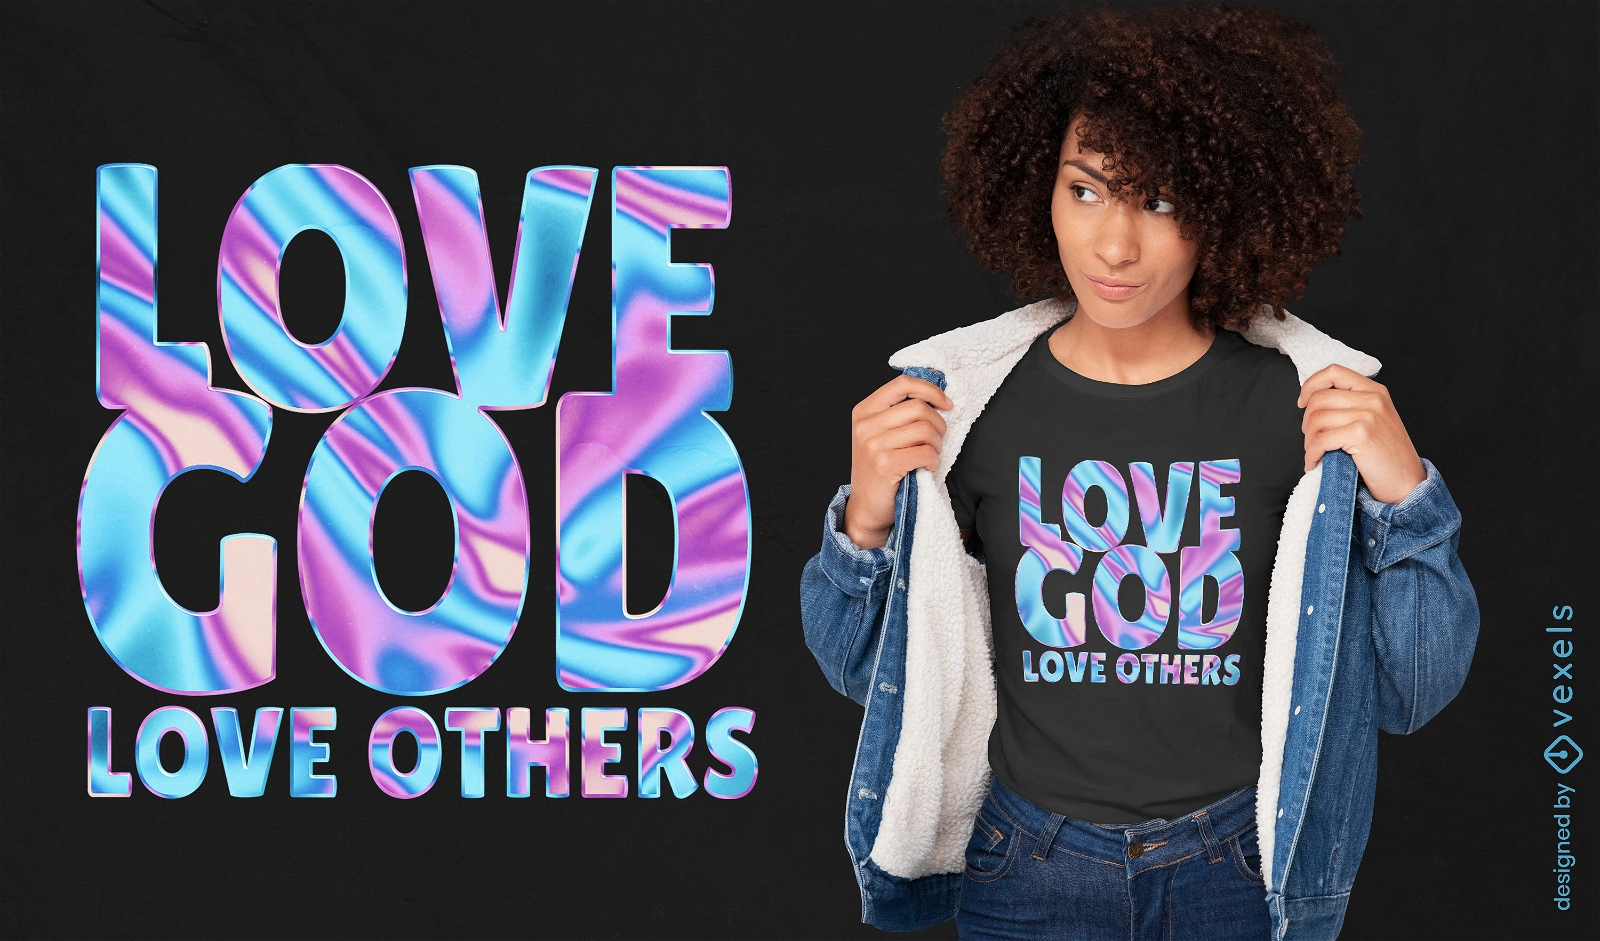 Dise?o de camiseta con cita religiosa inspiradora.